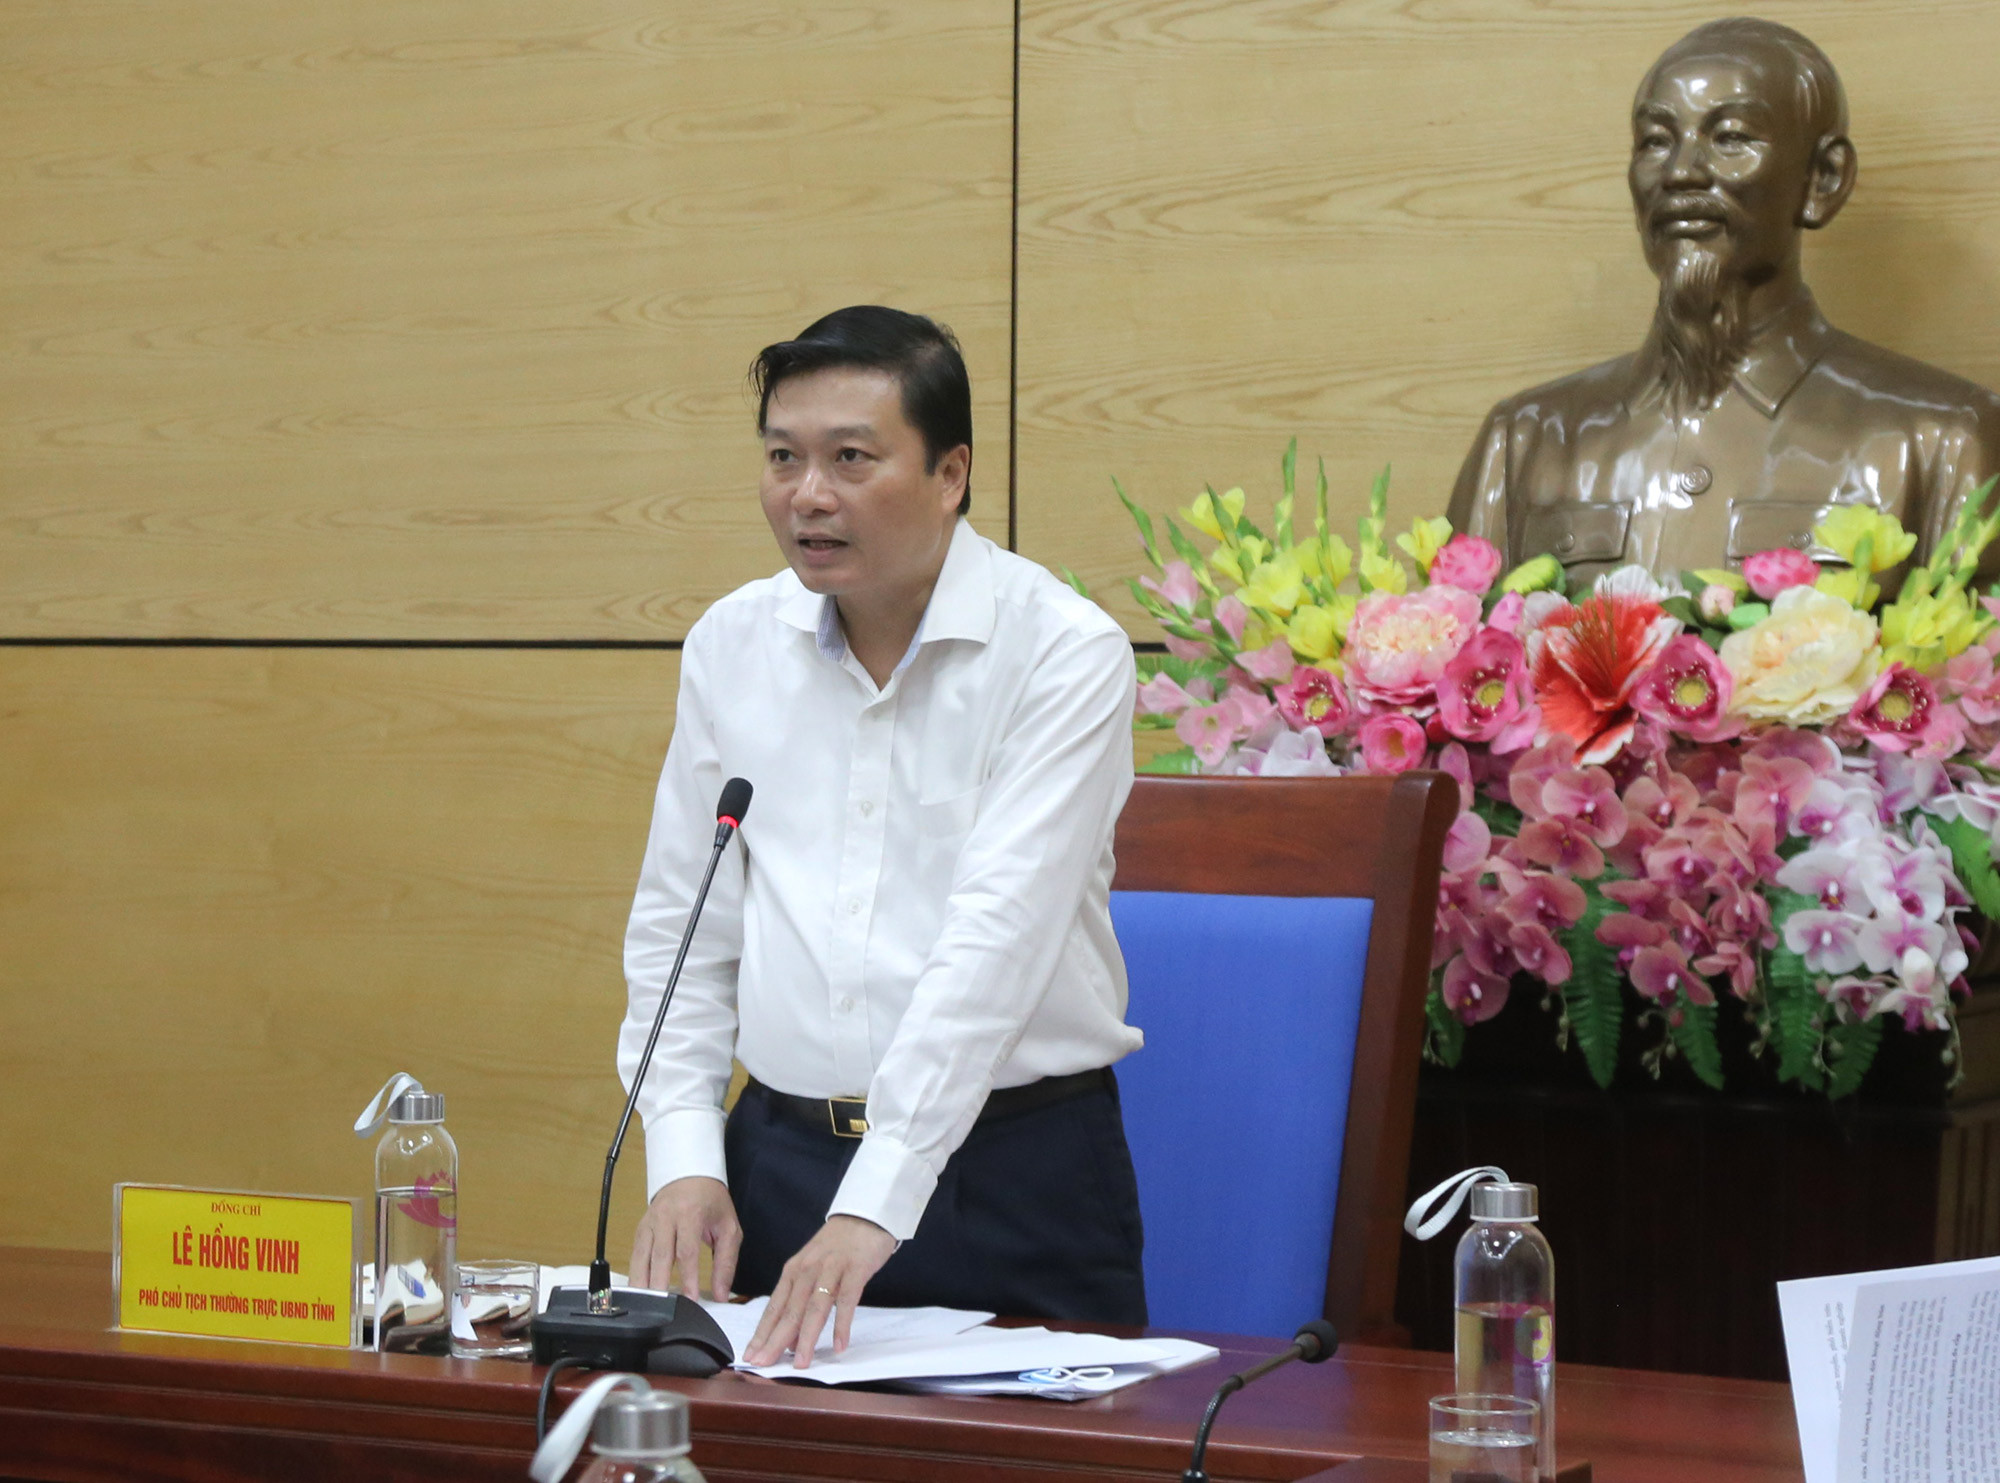 Phó chủ tịch UBND tỉnh Lê Hồng Vinh phát biểu tại cuộc họp. Ảnh: Việt Phương